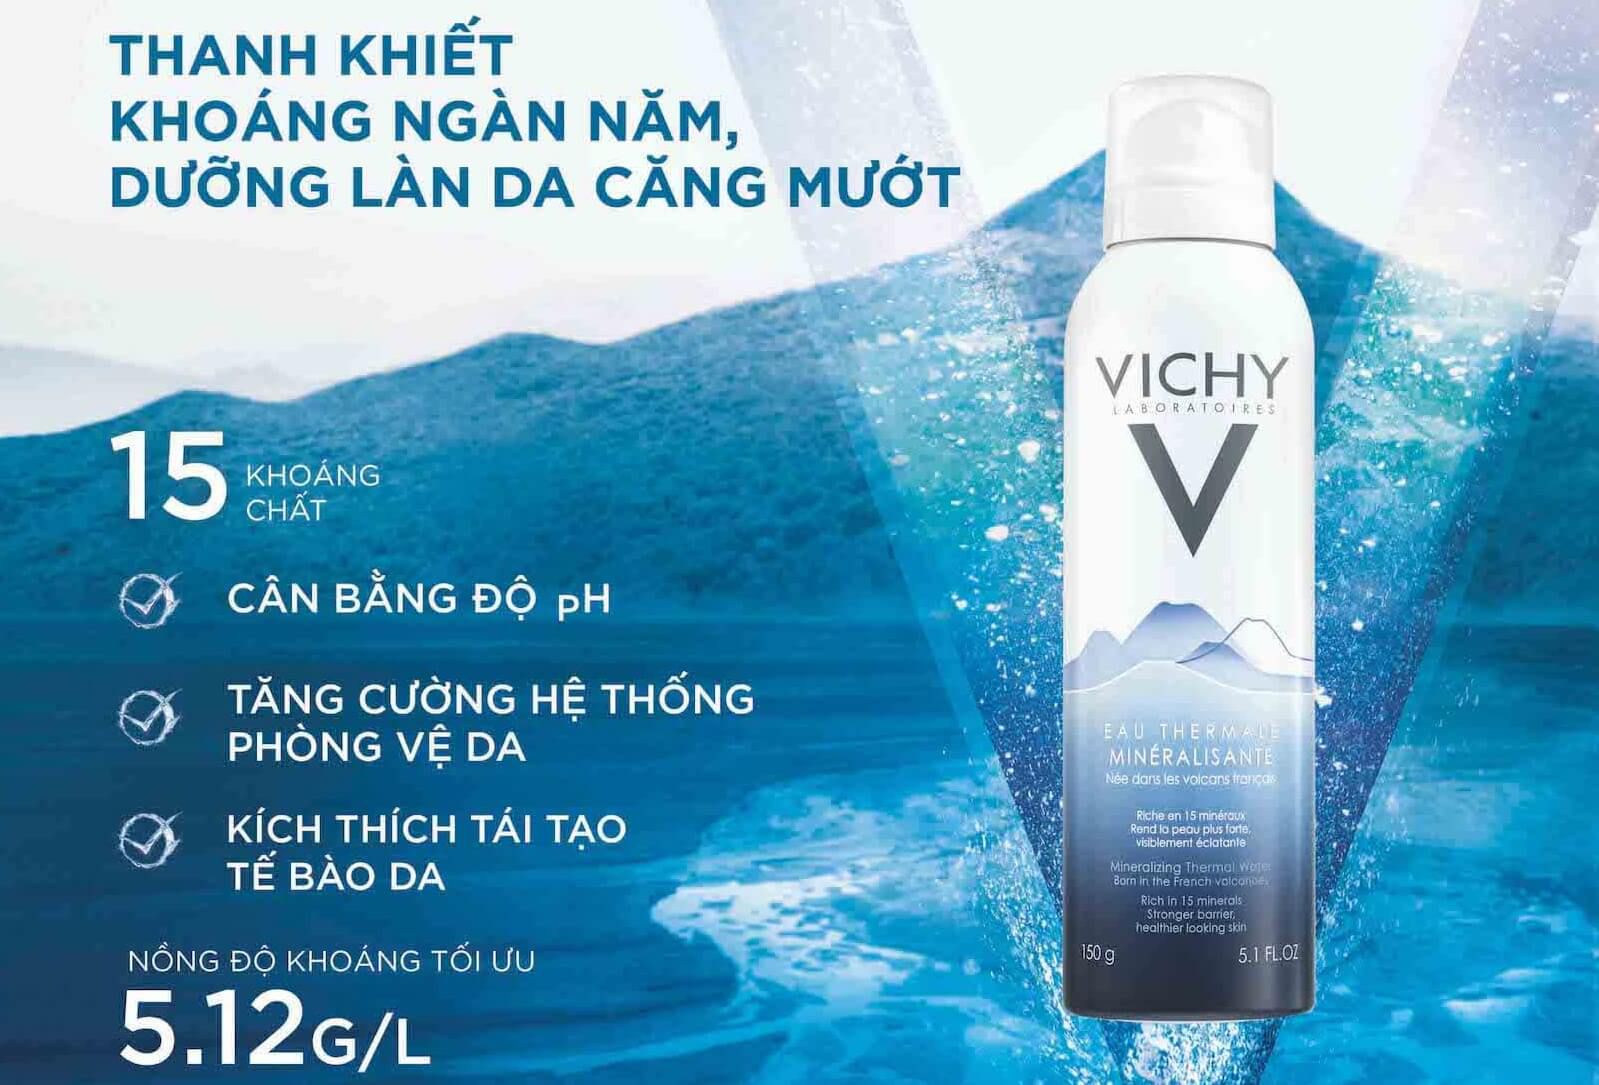 Cách sử dụng xịt khoáng Vichy tăng hiệu quả cấp ẩm cho da 1